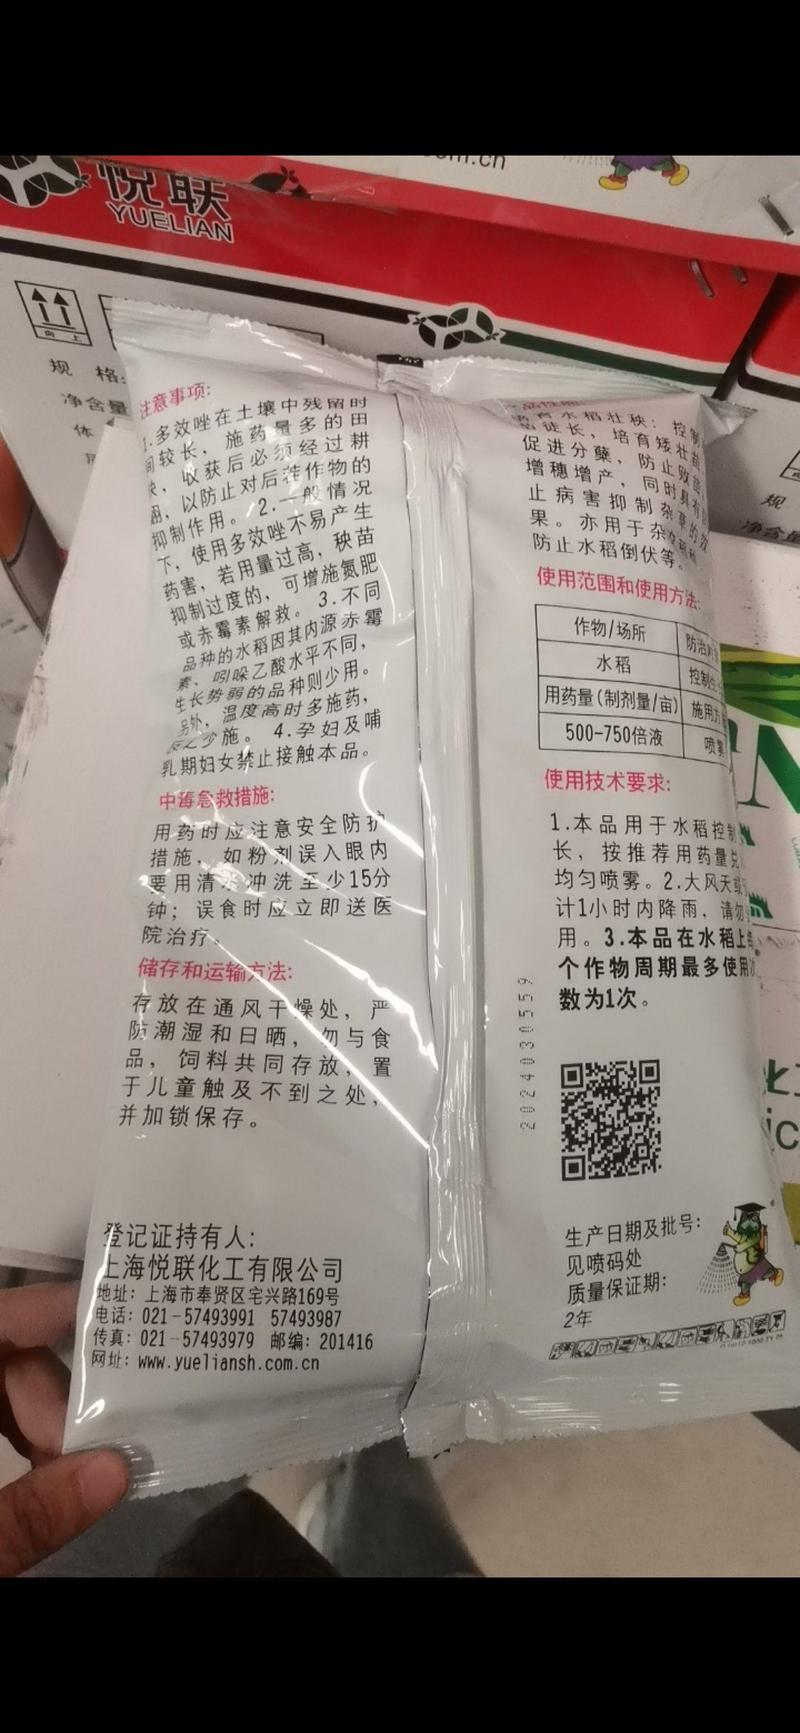 上海悦联15%多效唑矮壮素小麦水稻桃树果树矮化剂控旺剂1